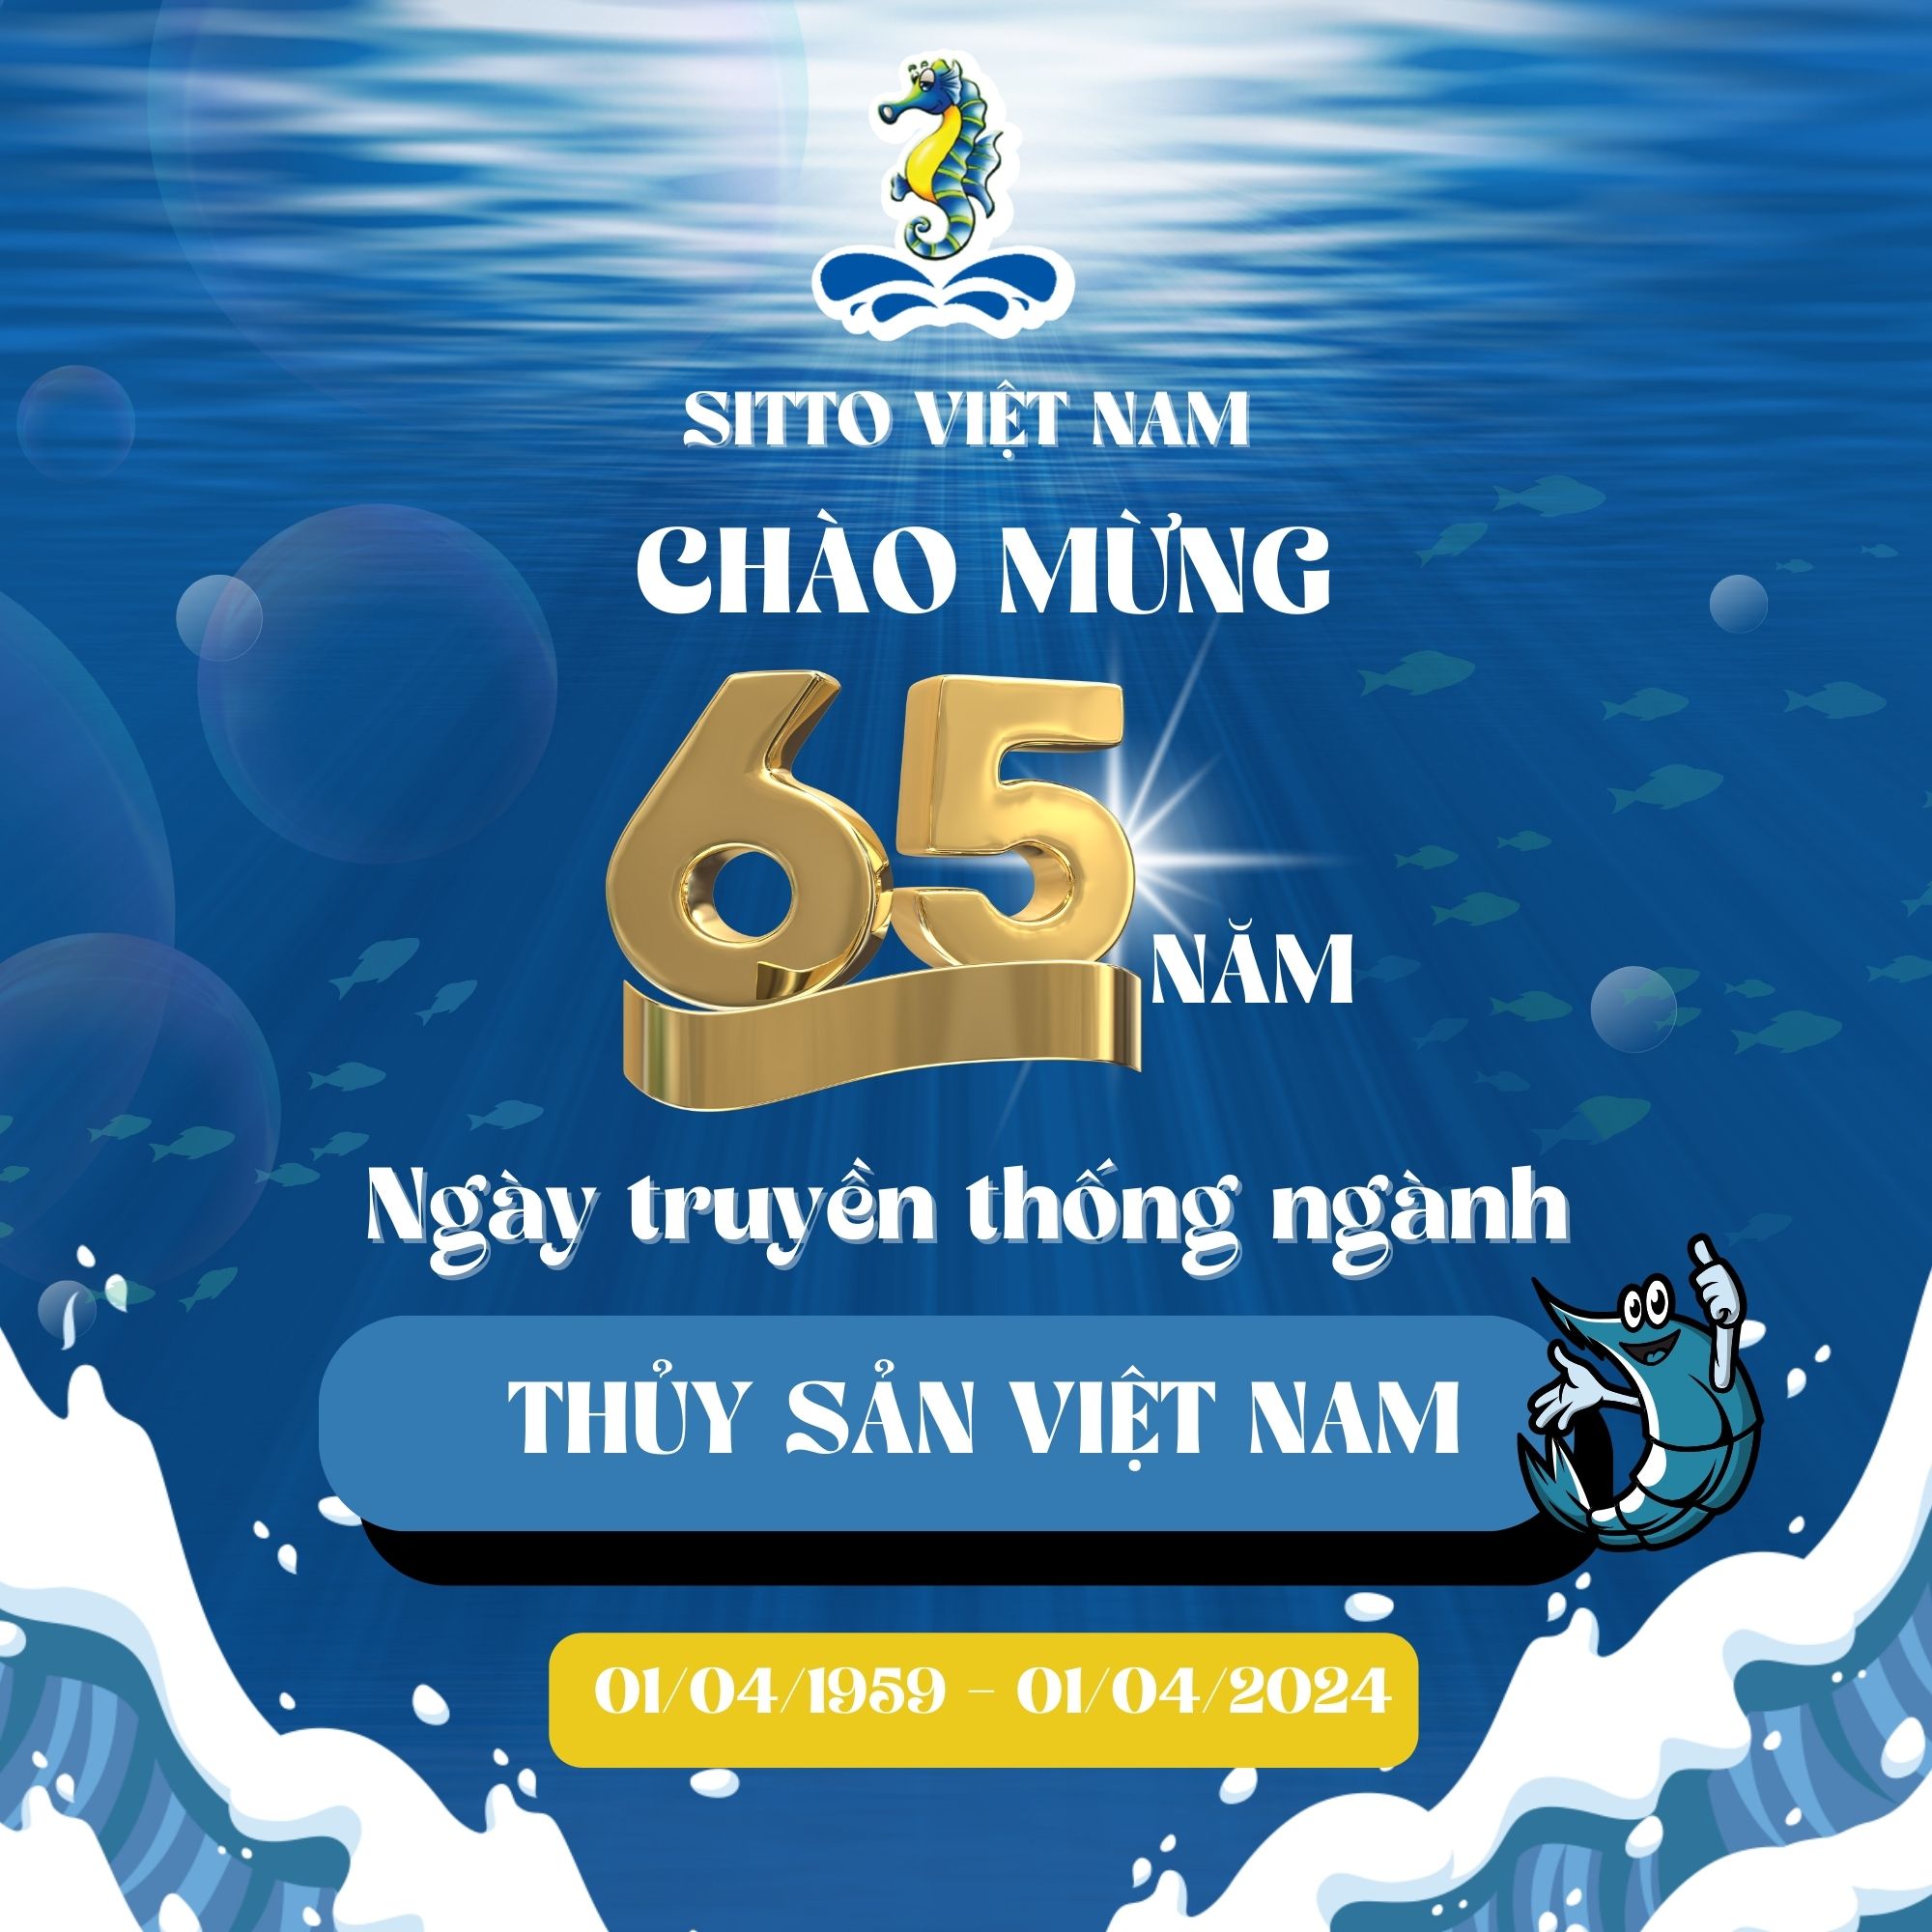 Chúc mừng kỷ niệm 65 năm Ngày truyền thống ngành thủy sản